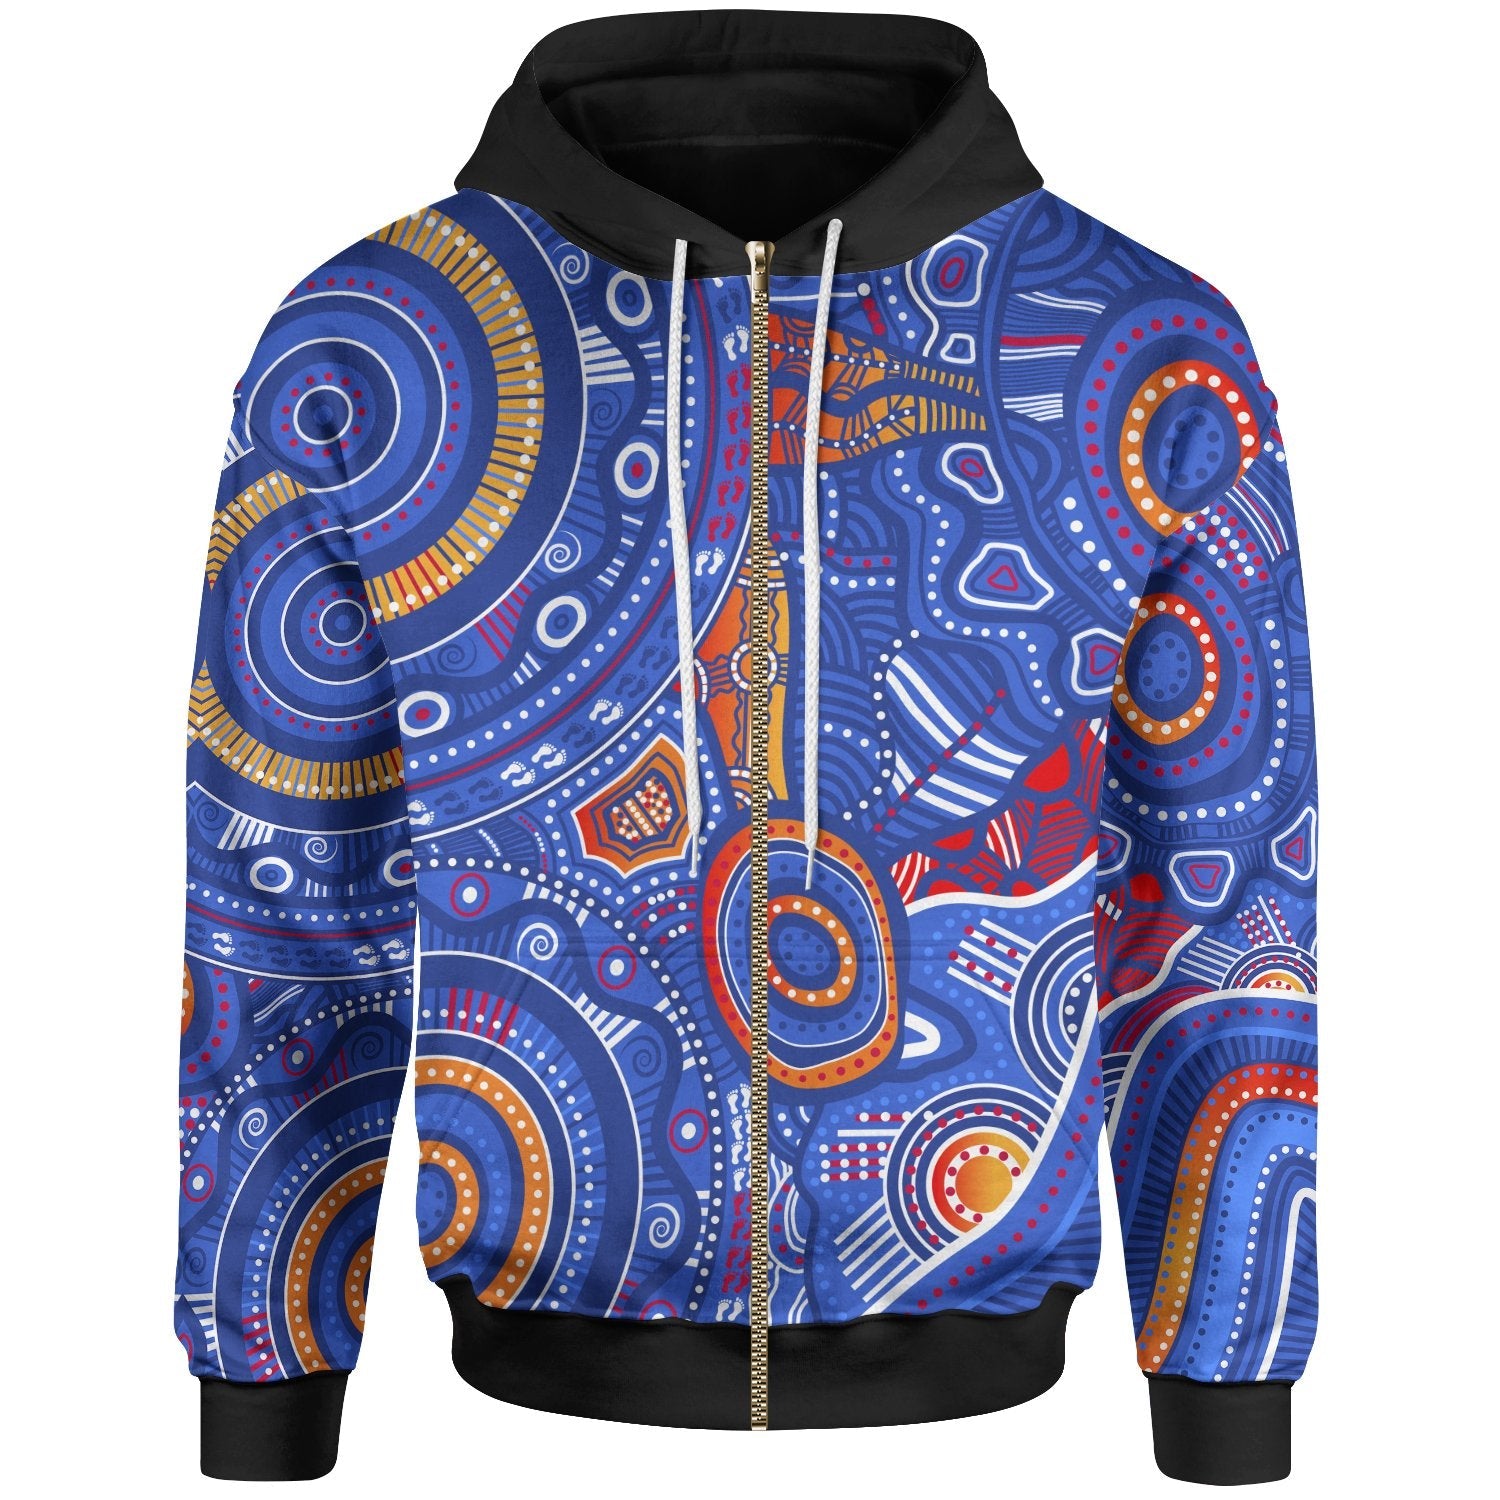 aboriginal-zip-up-hoodie-indigenous-footprint-patterns-blue-color